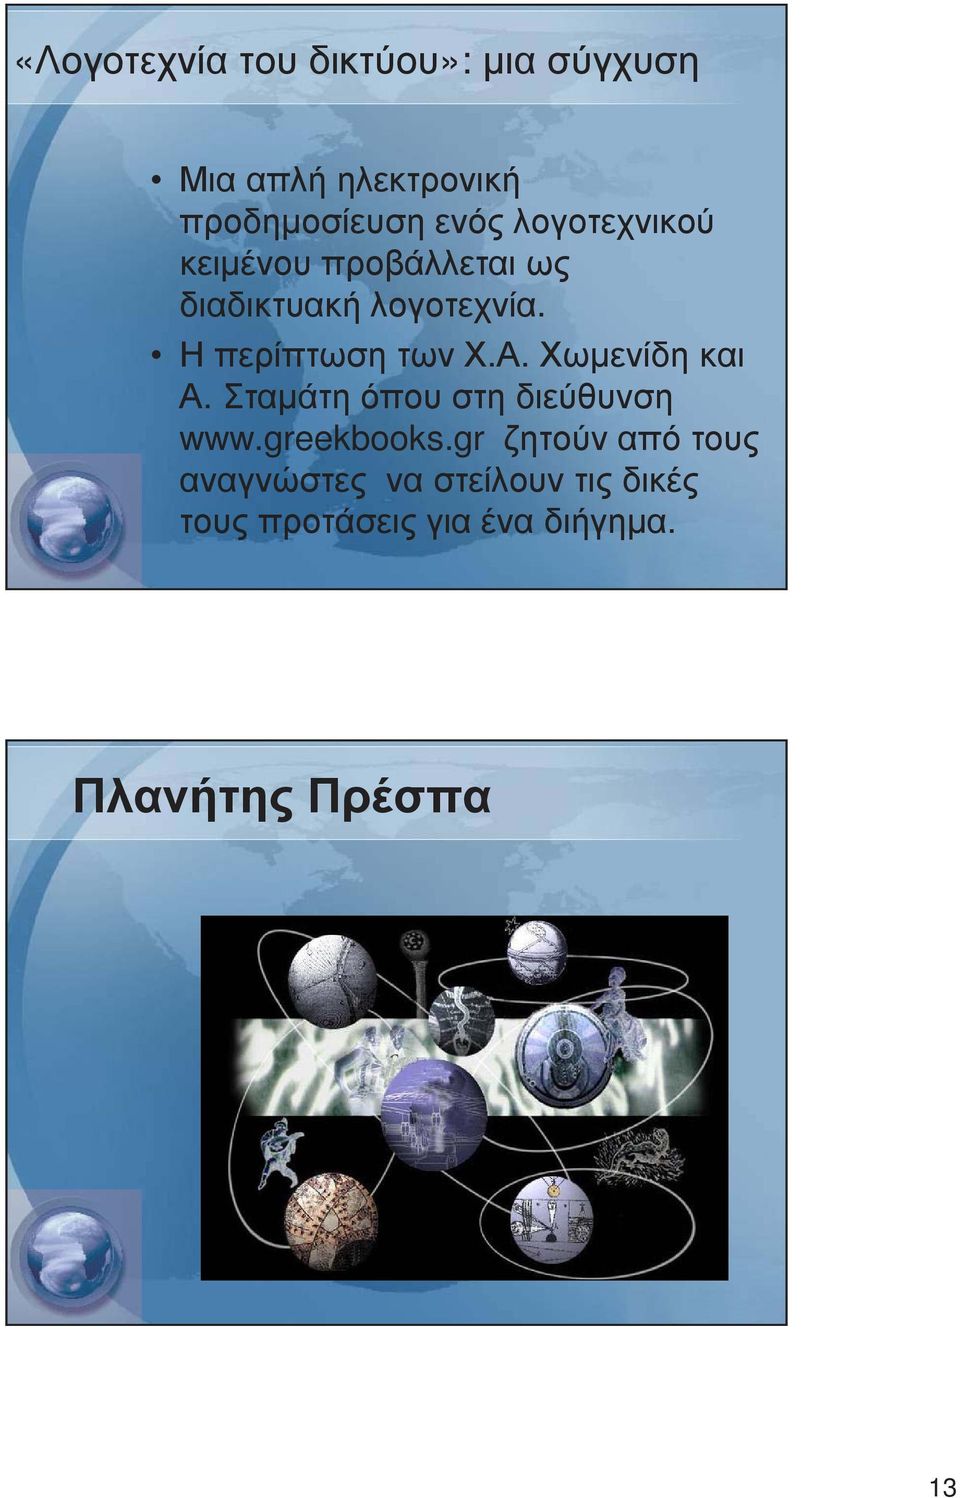 Α. Χωµενίδη και Α. Σταµάτη όπου στη διεύθυνση www.greekbooks.